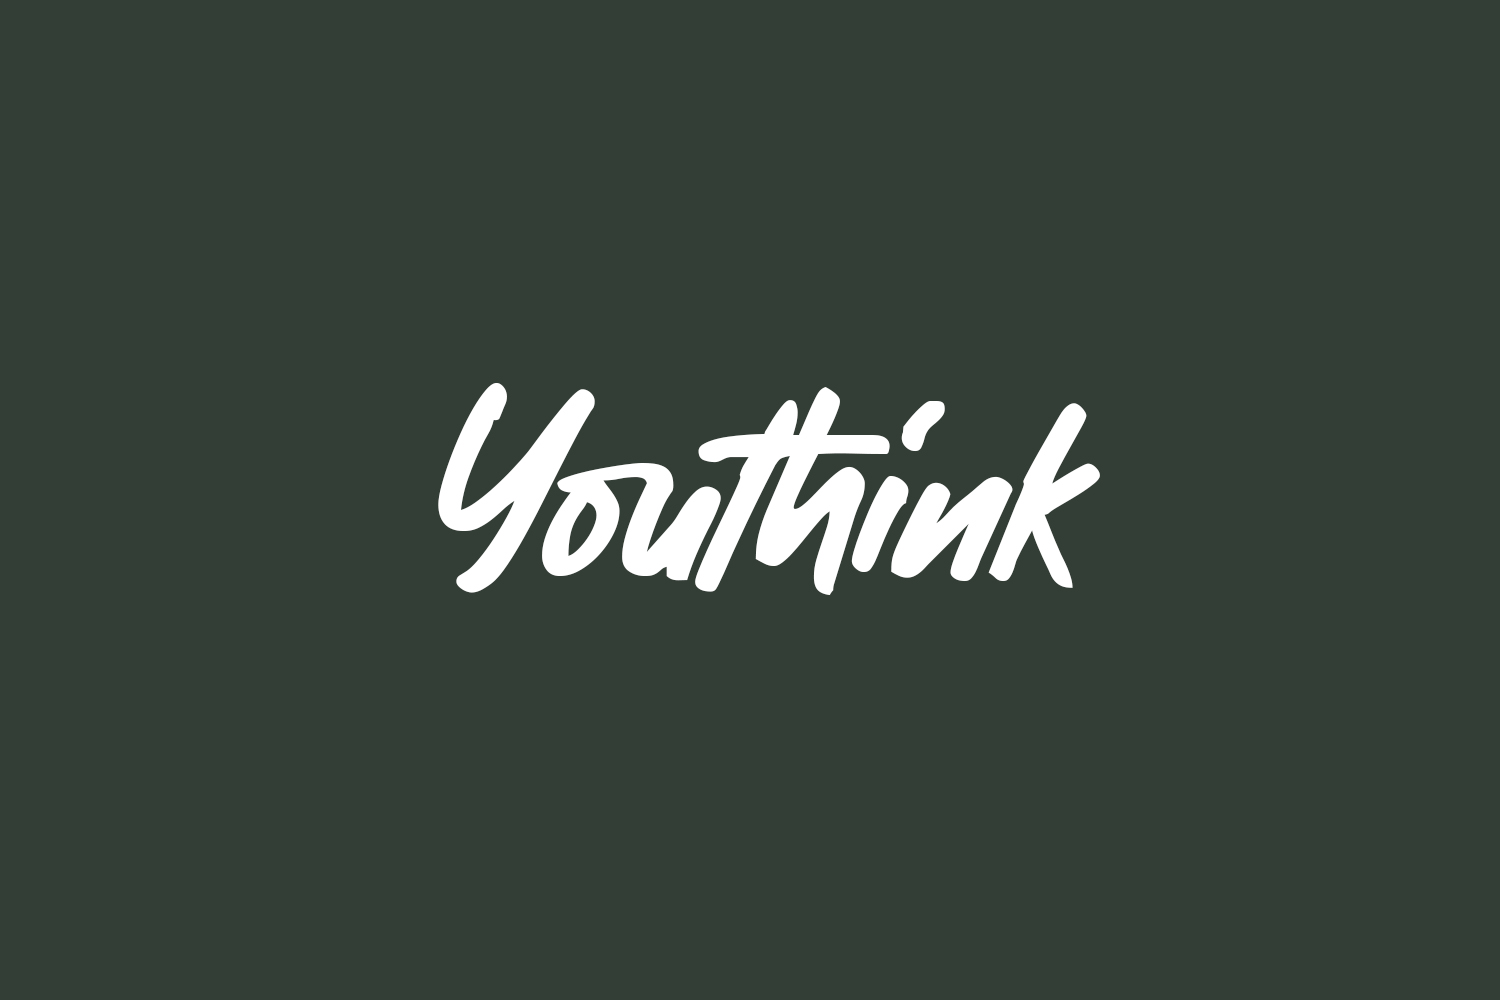 Youthink Free Font